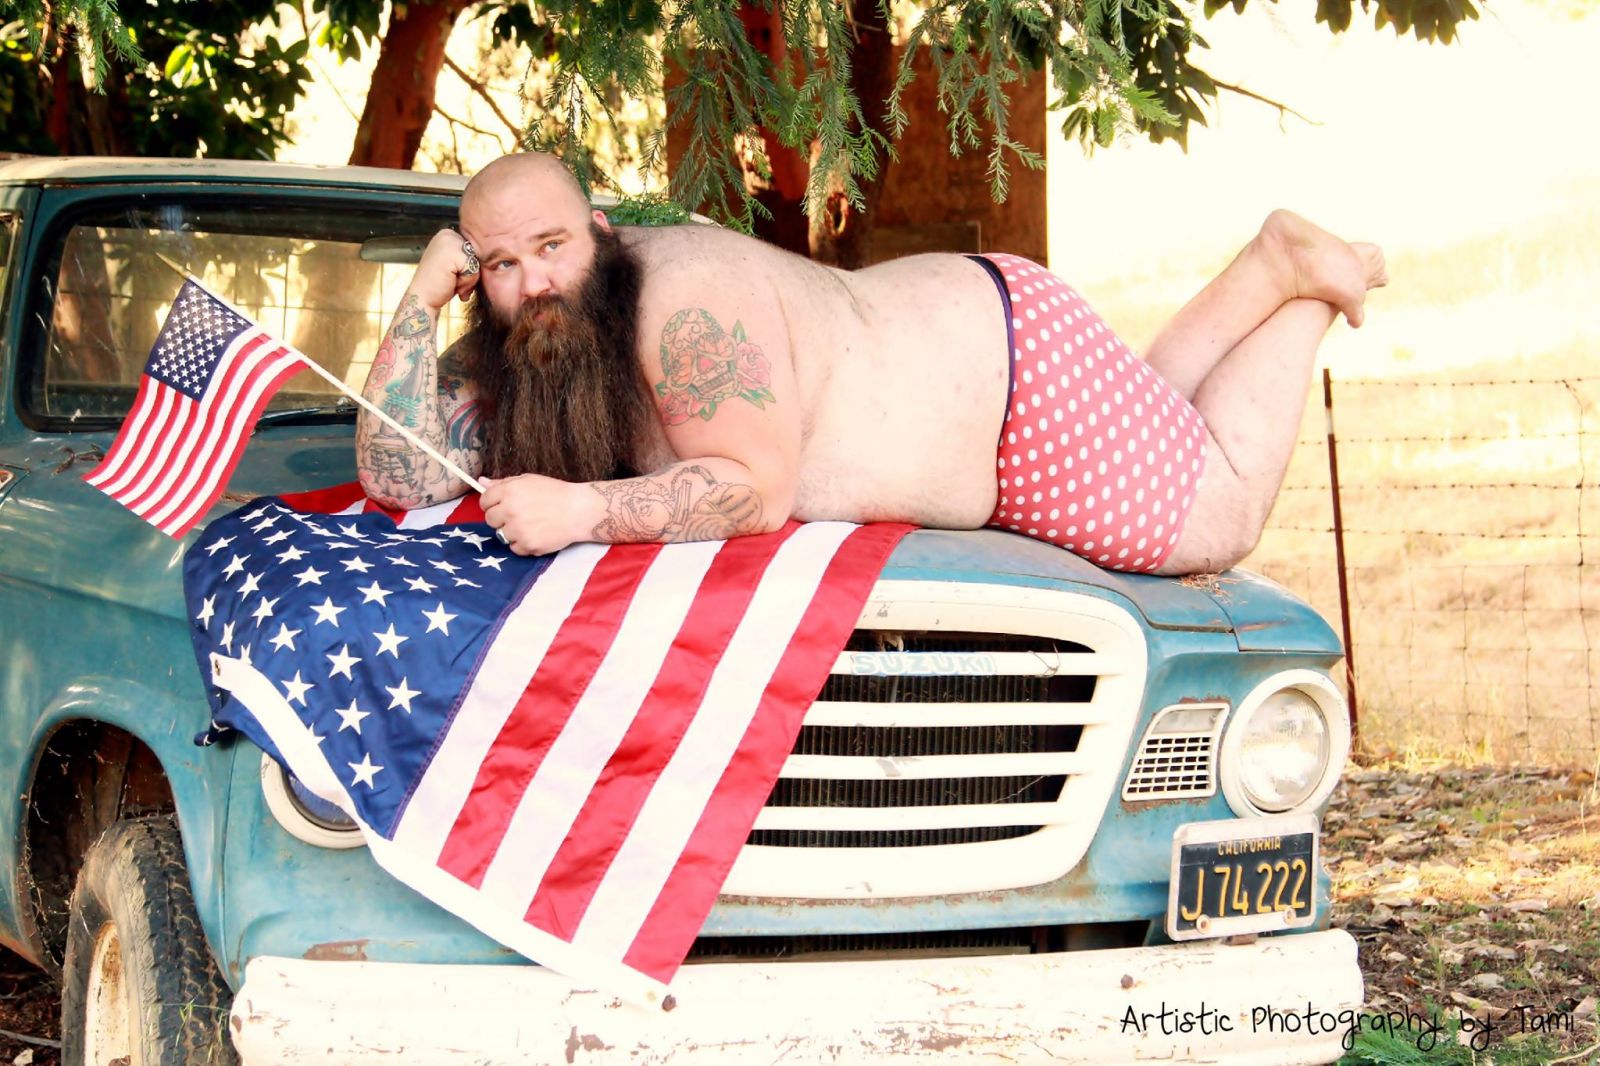 Эпично: огромный бородатый мужчина спародировал патриотичную фотосессию моделей